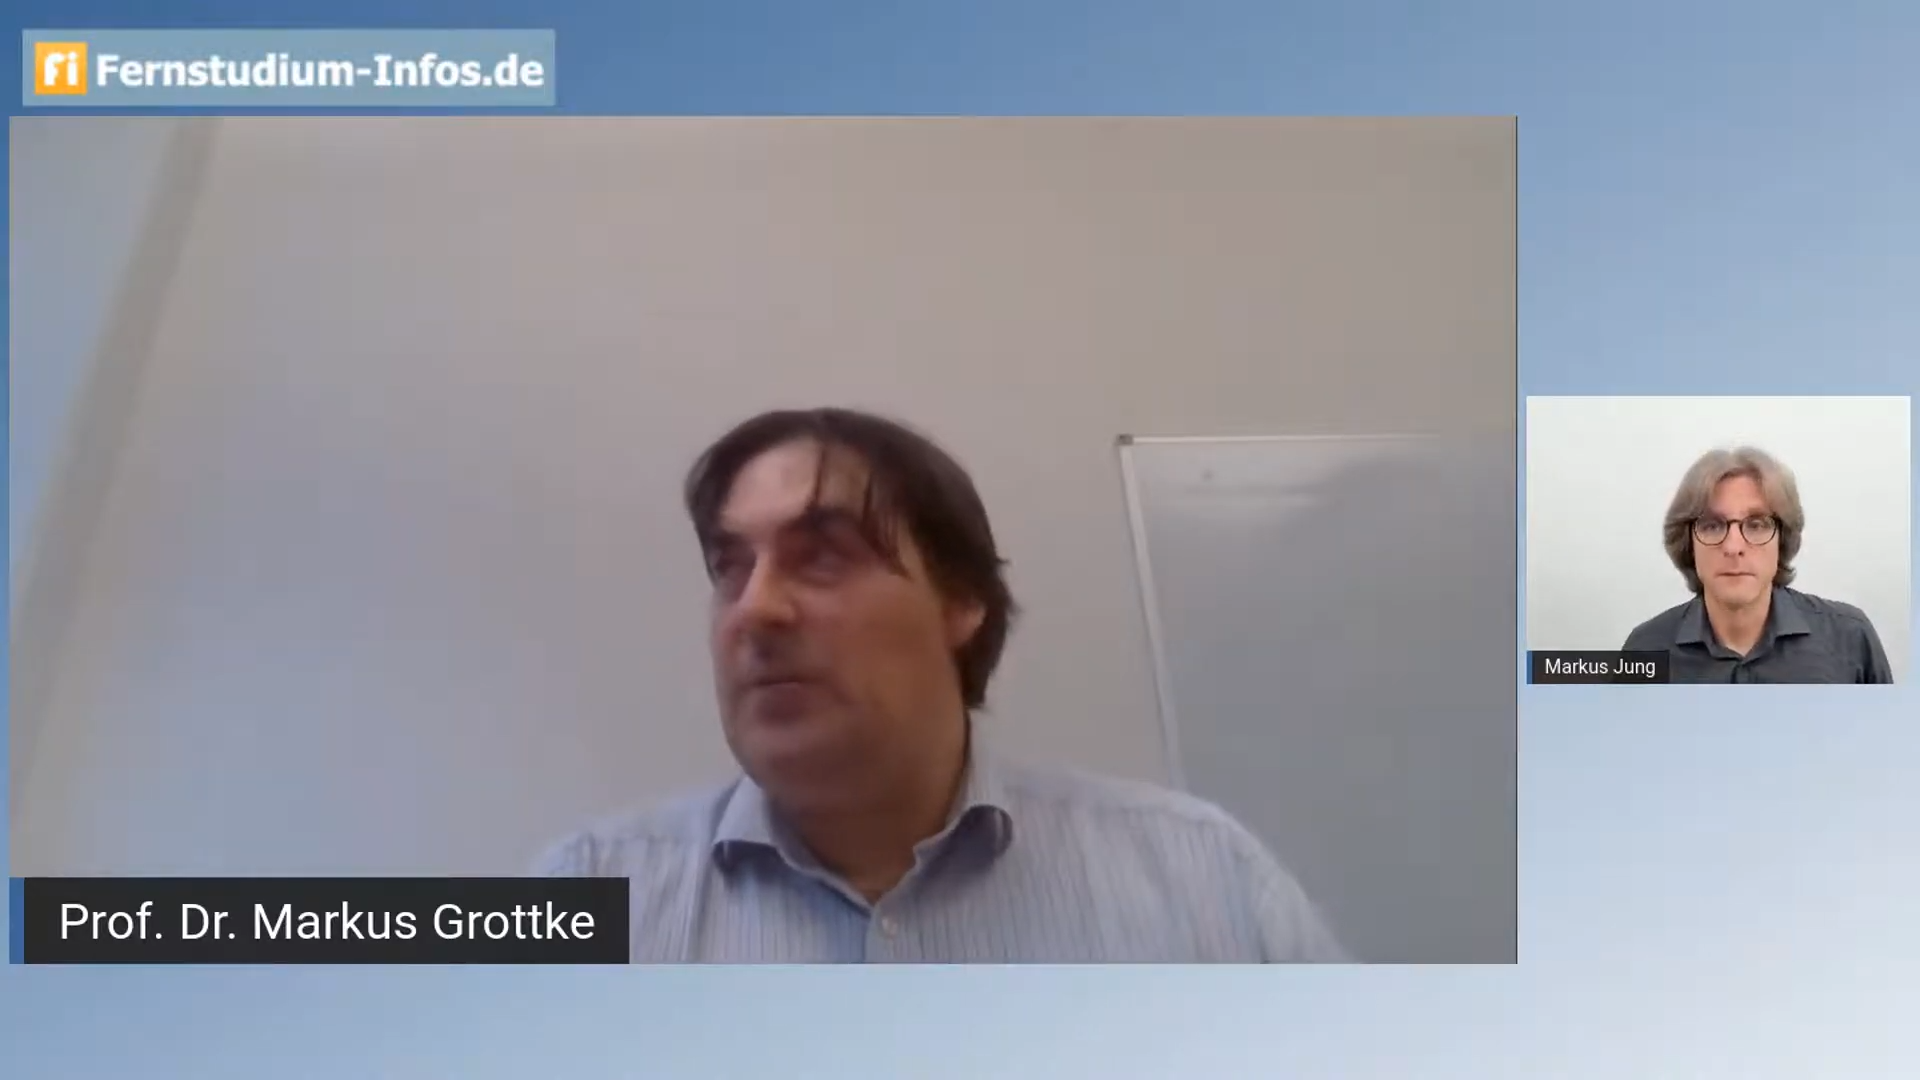 Prof. Dr. Markus Grottke interviewt von Markus Jung